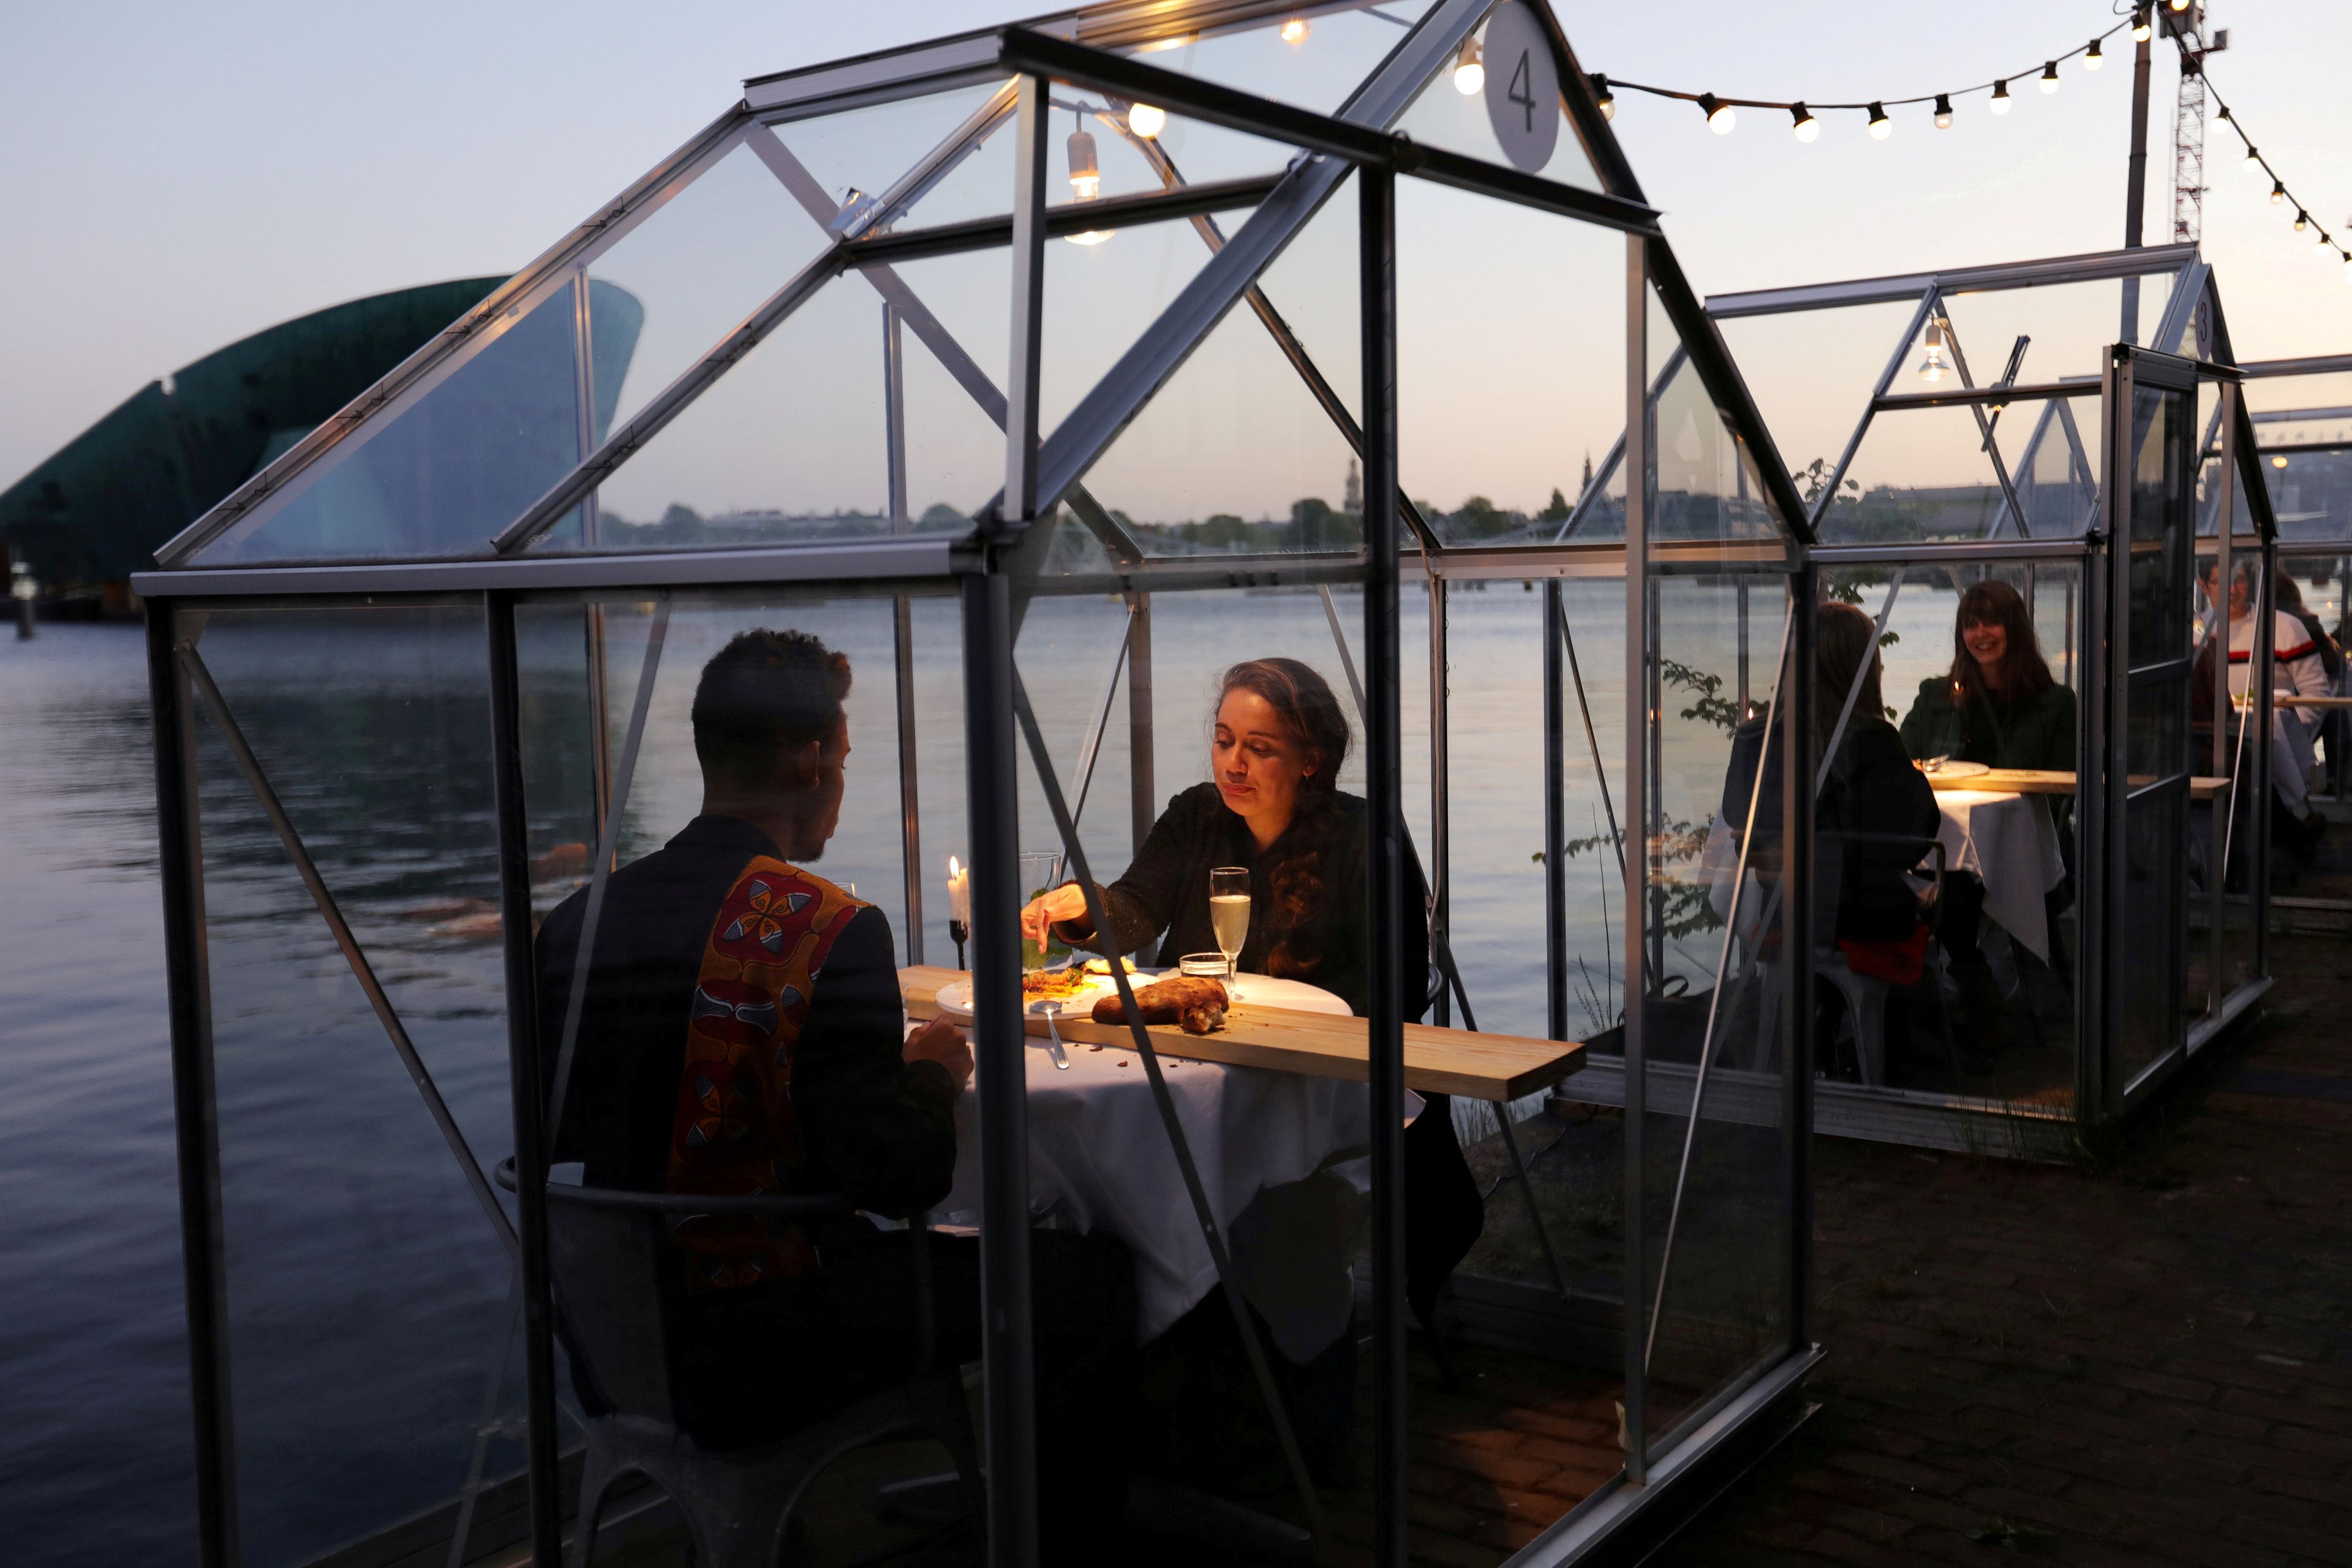 Un restaurante de Ámsterdam coloca las mesas bajo invernaderos para asegurar la distancia social durante el coronavirus.